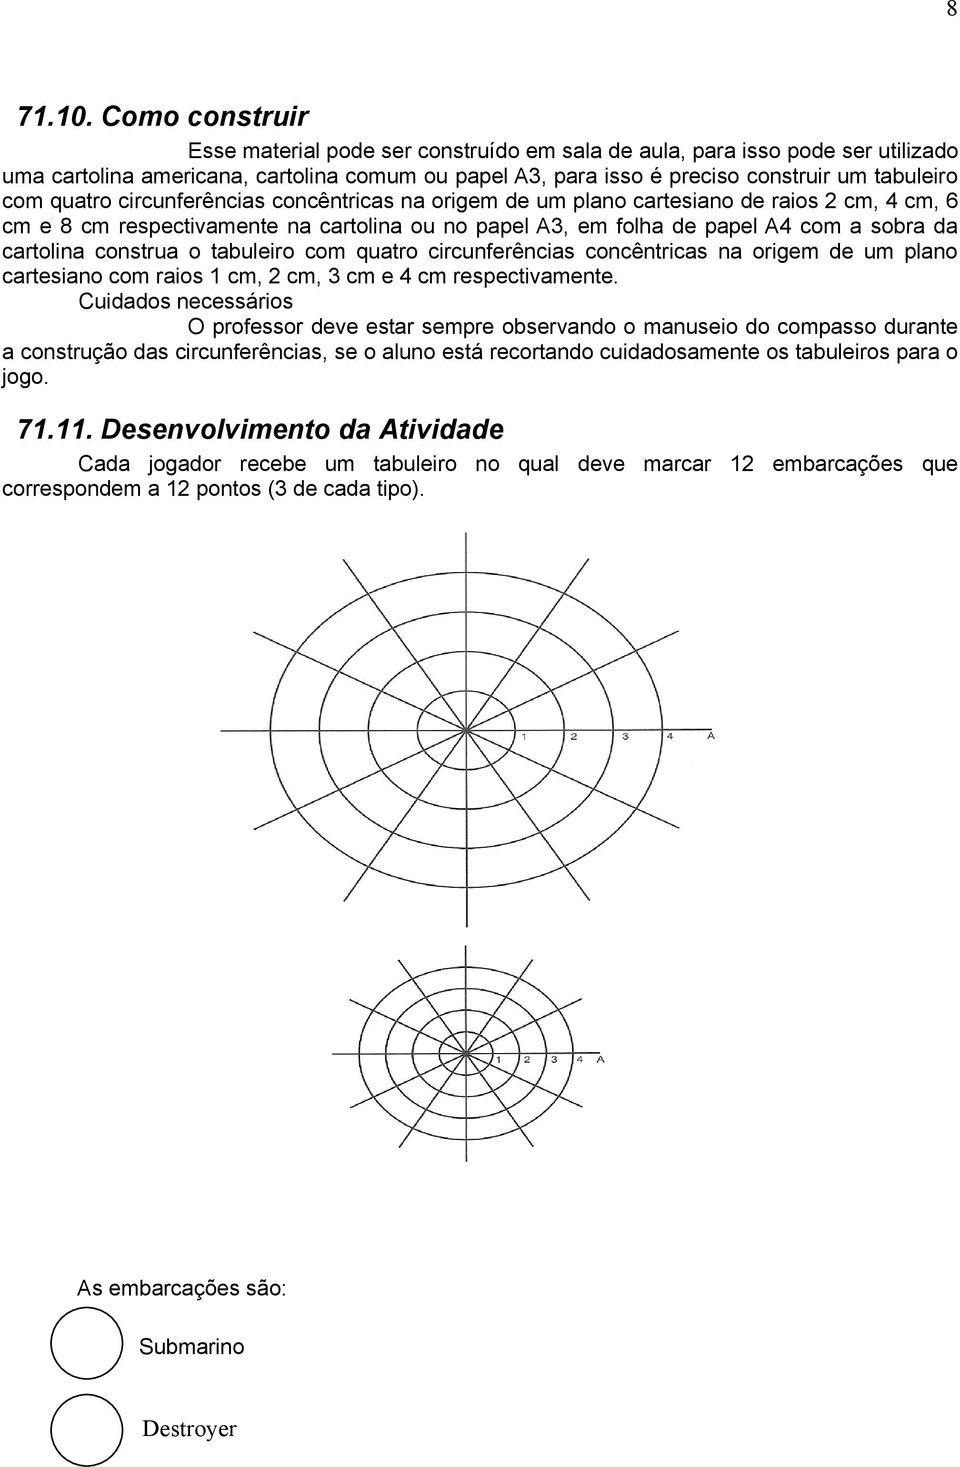 quatro circunferências concêntricas na origem de um plano cartesiano de raios 2 cm, 4 cm, 6 cm e 8 cm respectivamente na cartolina ou no papel A3, em folha de papel A4 com a sobra da cartolina